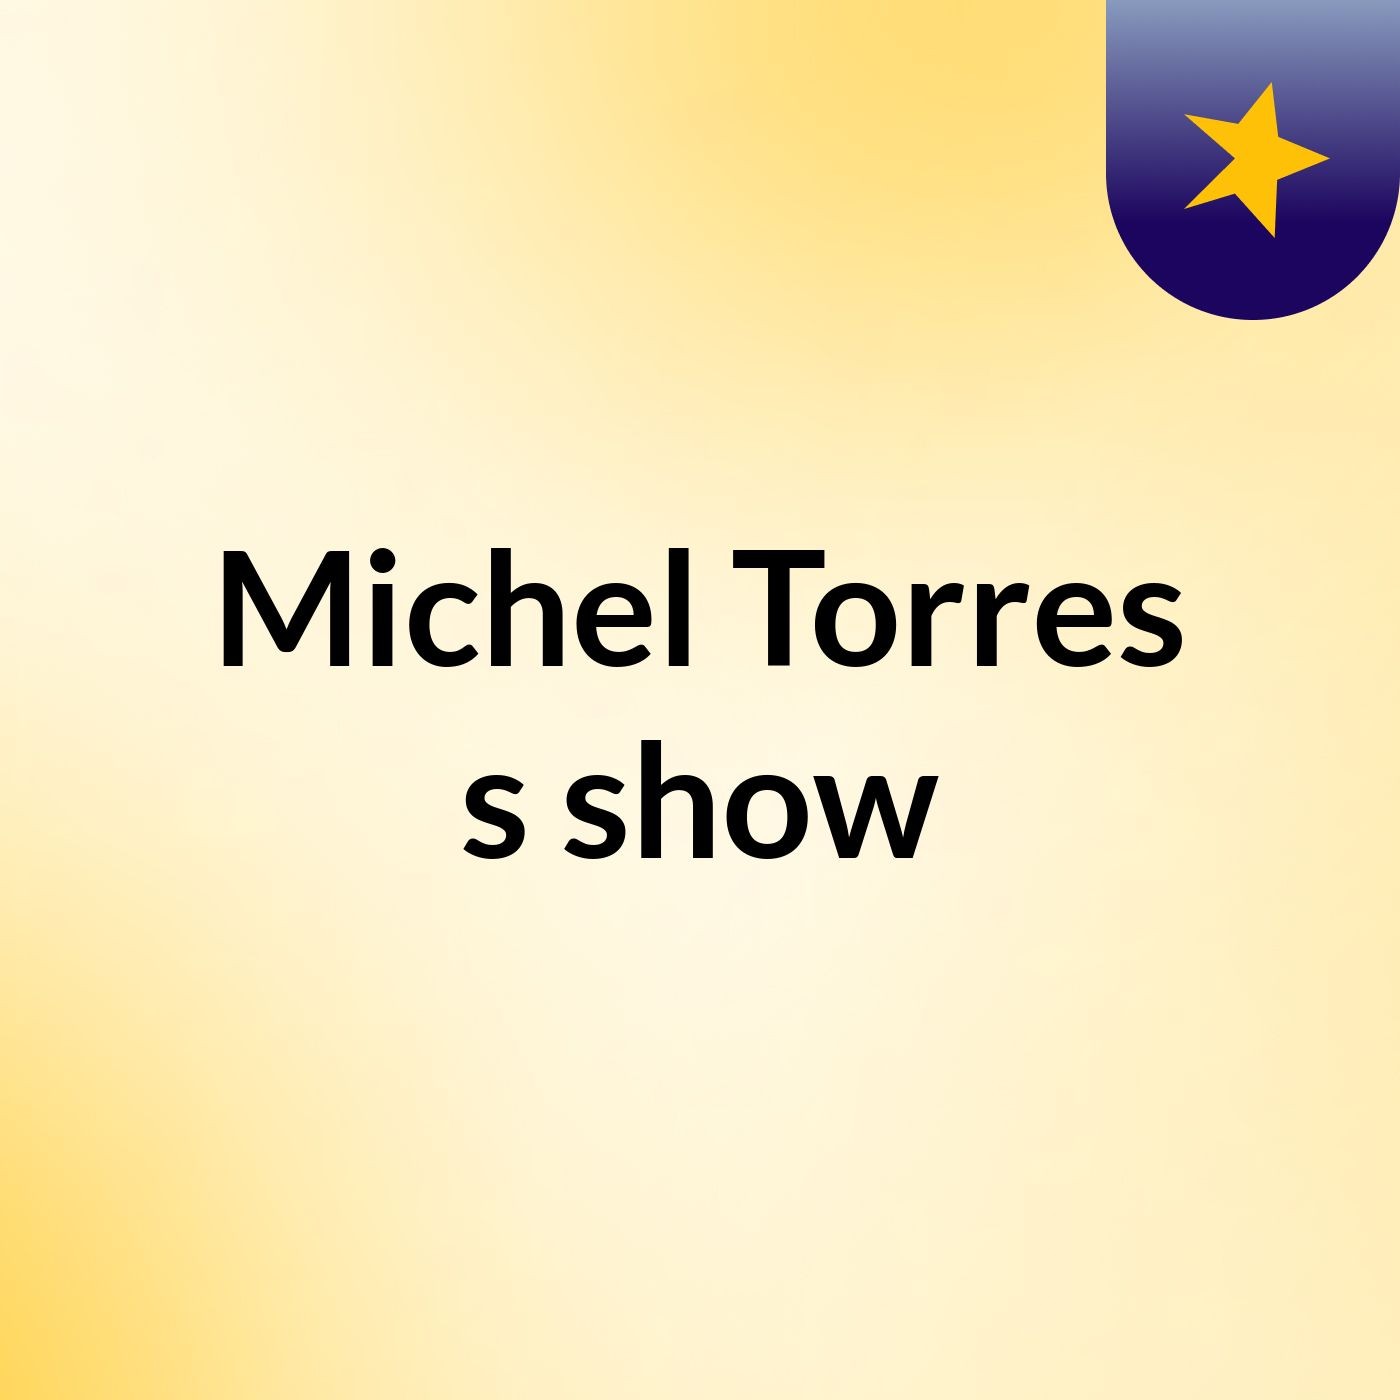 Michel Torres's show